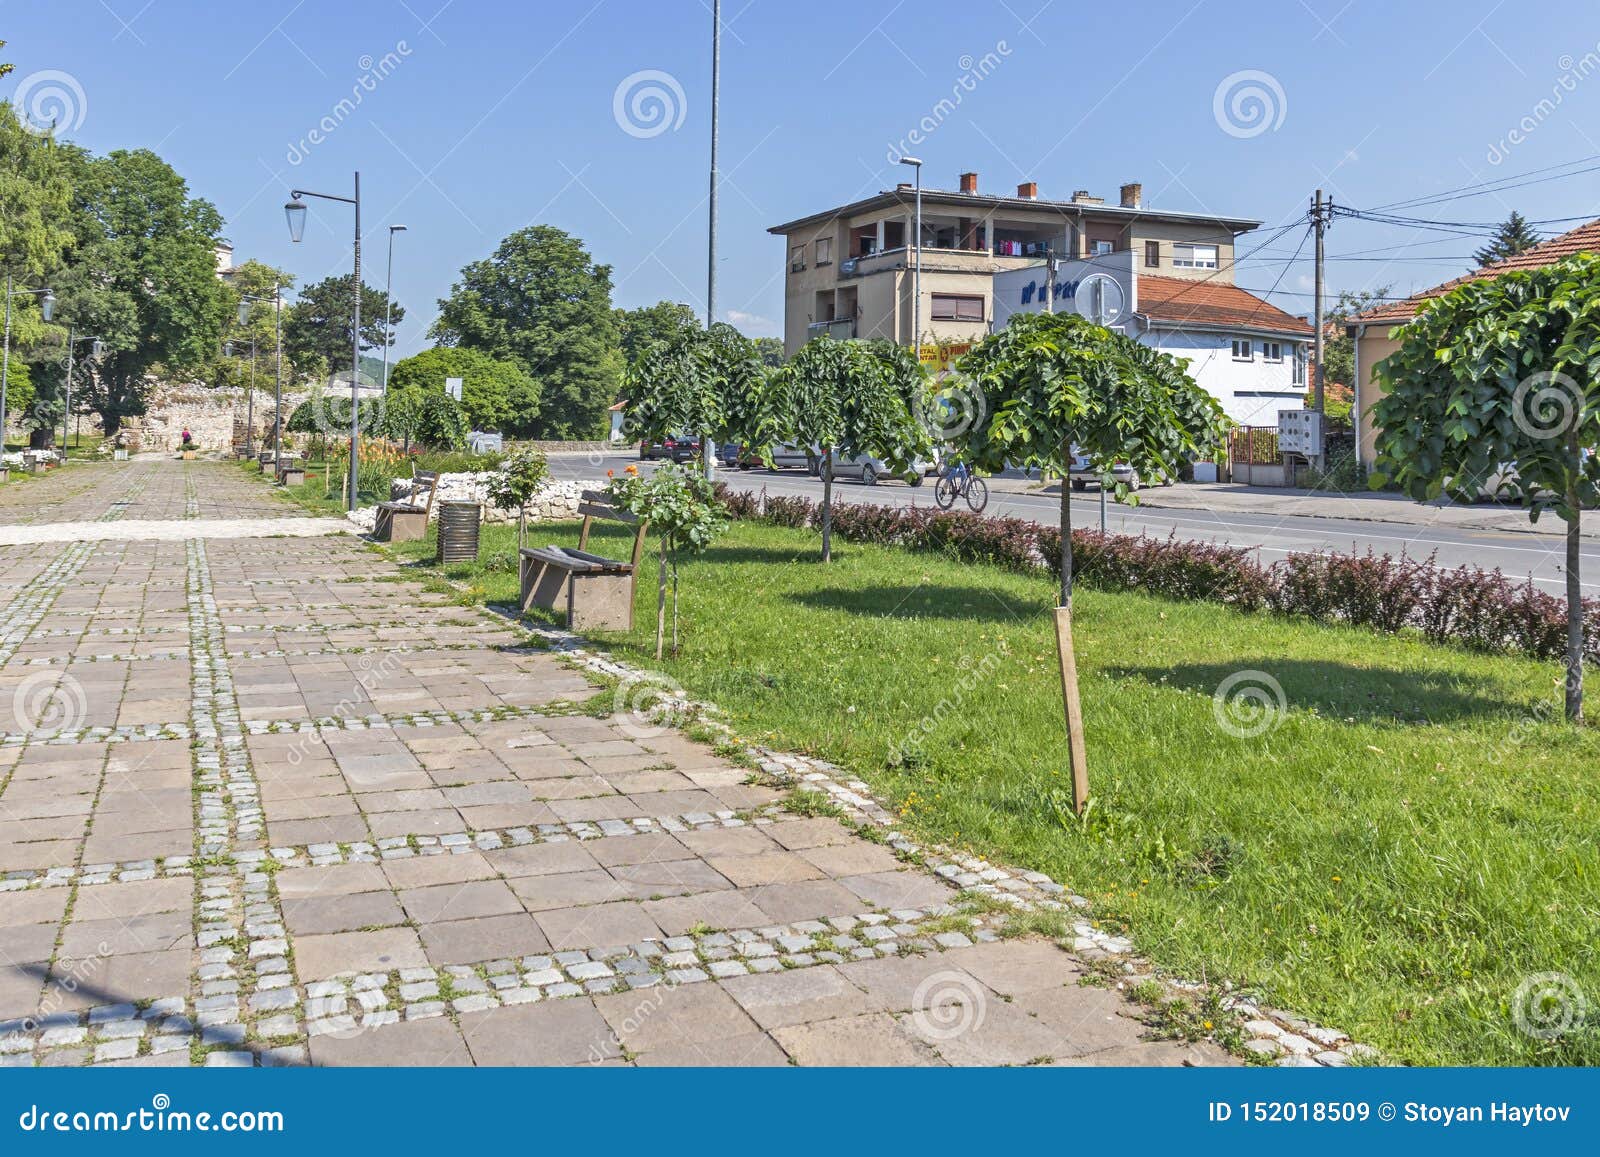 Rua e construção típicas na cidade de Pirot, Sérvia. PIROT, SÉRVIA - 15 DE JUNHO DE 2019: Rua e construção típicas na cidade da Sérvia de Pirot, do sul e oriental